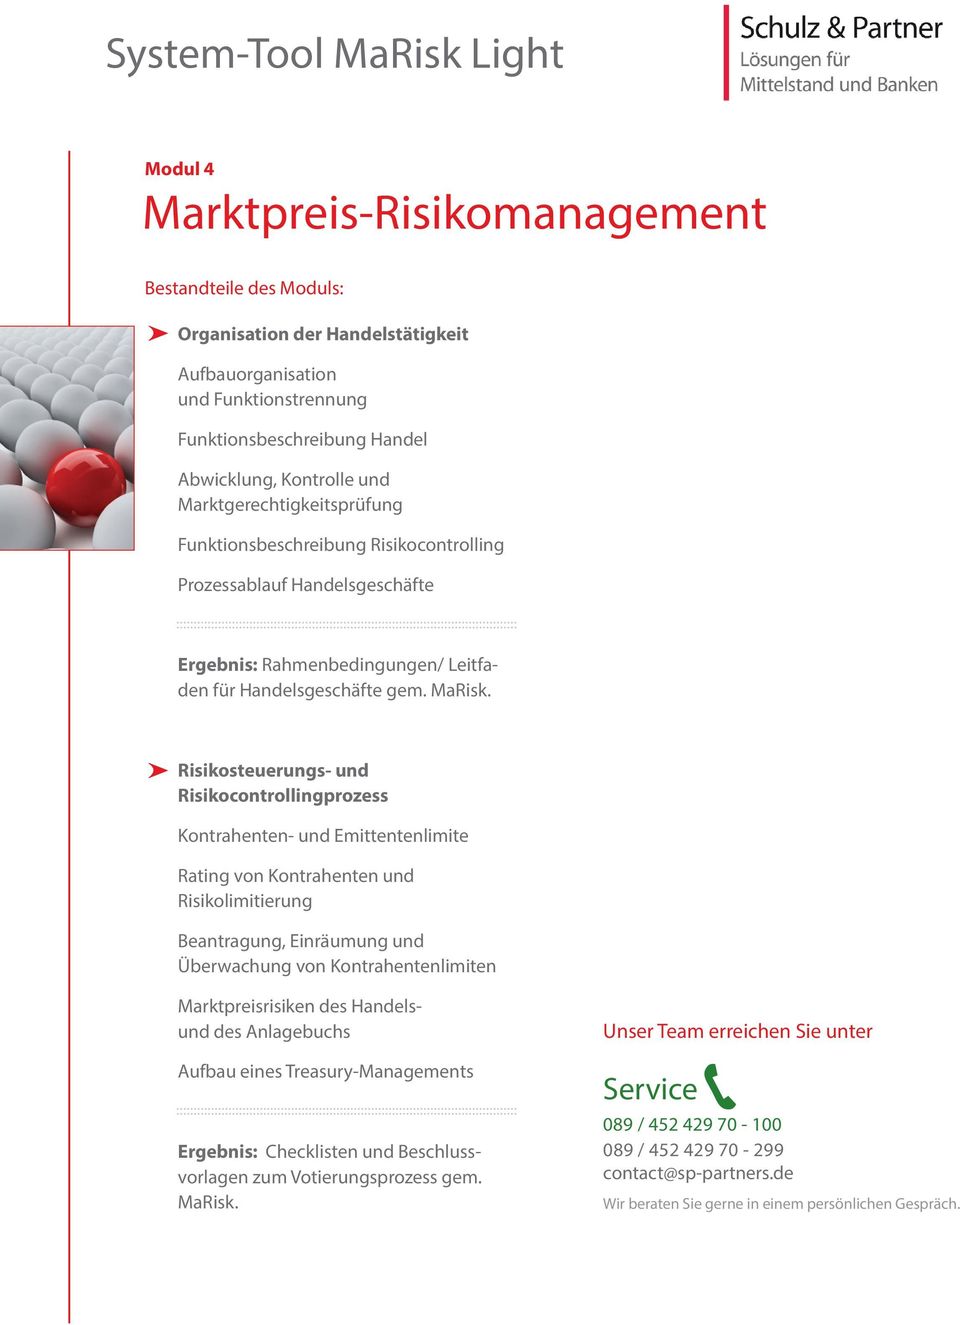 Risikosteuerungs- und Risikocontrollingprozess Kontrahenten- und Emittentenlimite Rating von Kontrahenten und Risikolimitierung Beantragung, Einräumung und